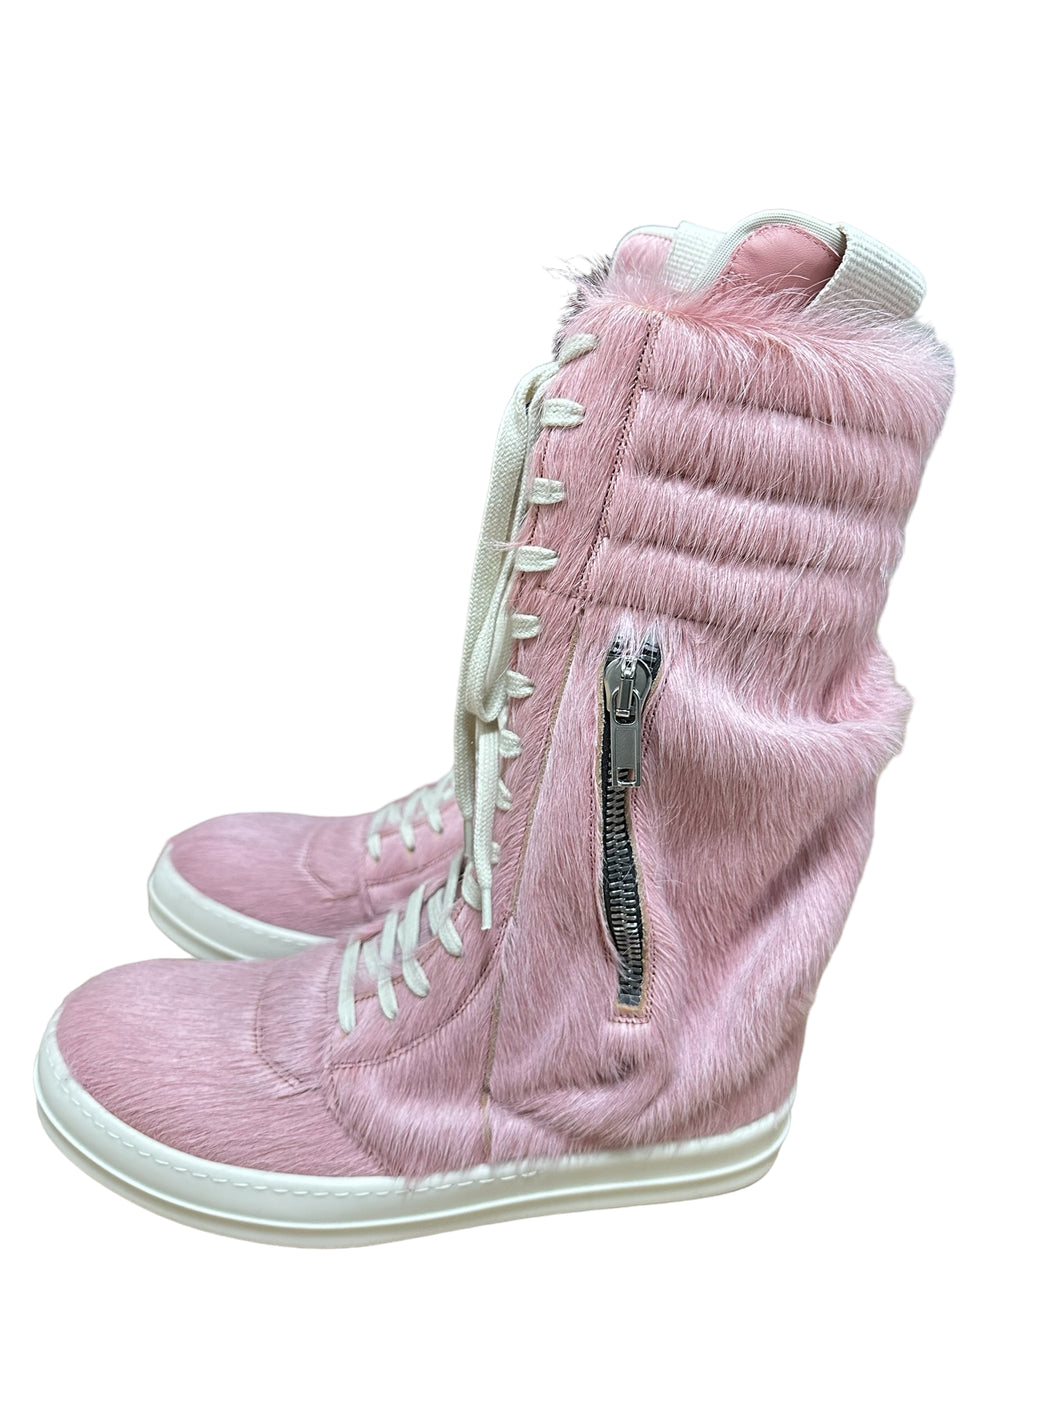 Rick Owens Dirty Pink Pony Hair Cargobasket Sneakers